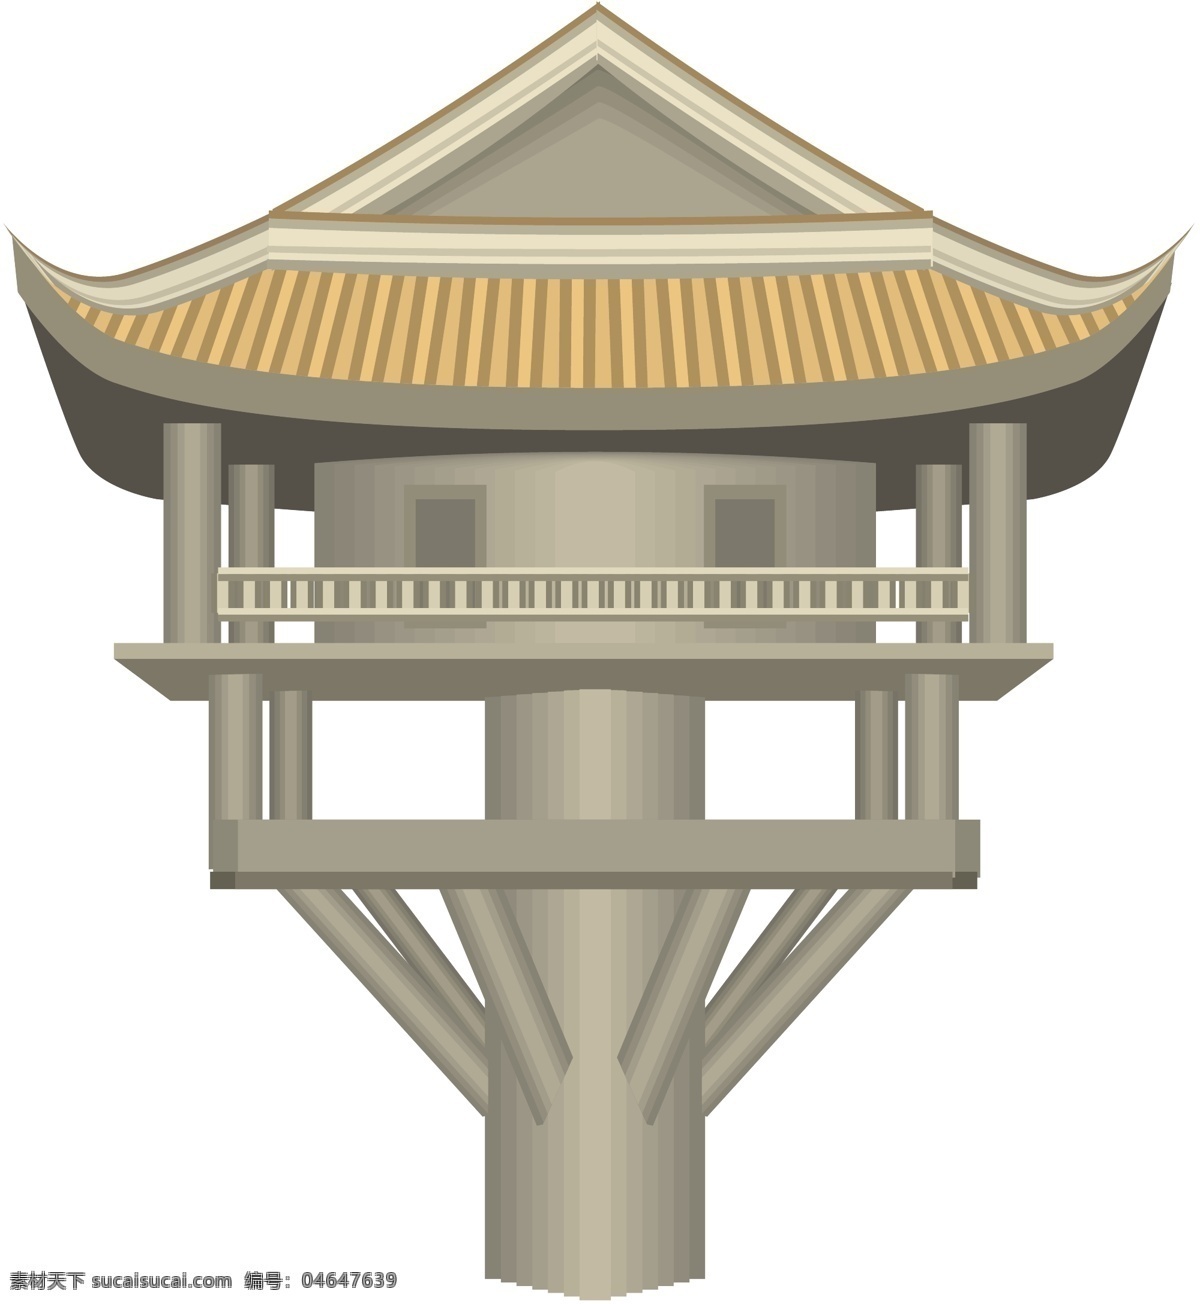 中国 古建筑 商业矢量 矢量风景建筑 矢量下载 中国古建筑 网页矢量 矢量图 其他矢量图